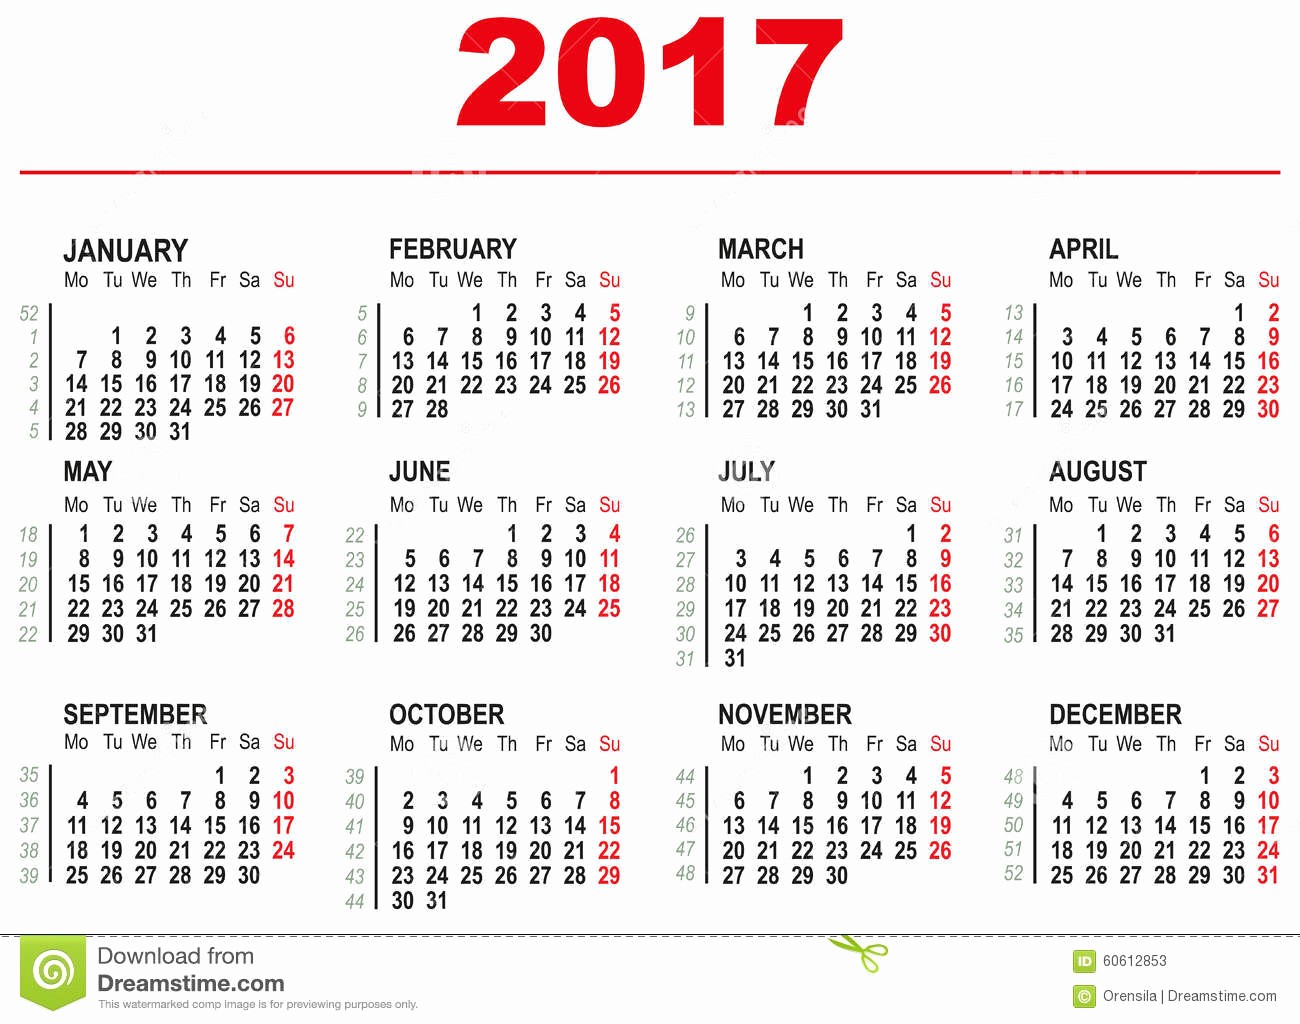 Week by Week Calendar Template Luxury Weekly Calendar 2017